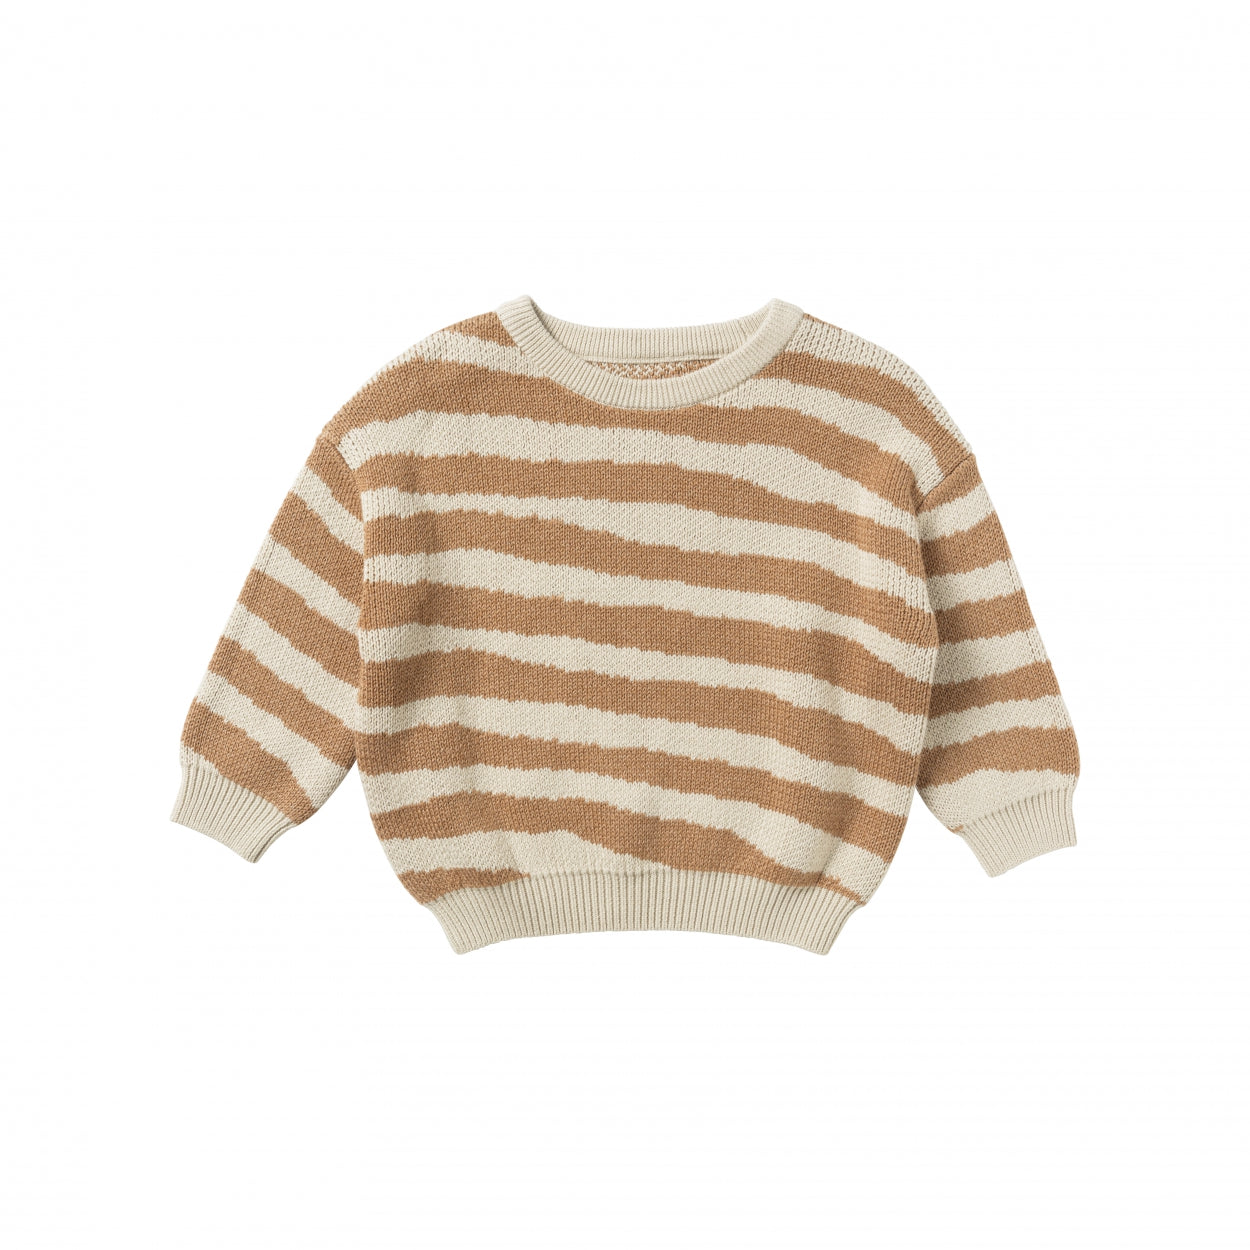 Jongens Sweater Cross Stripe | Nevada van Your Wishes in de kleur Clay in maat 98-104.